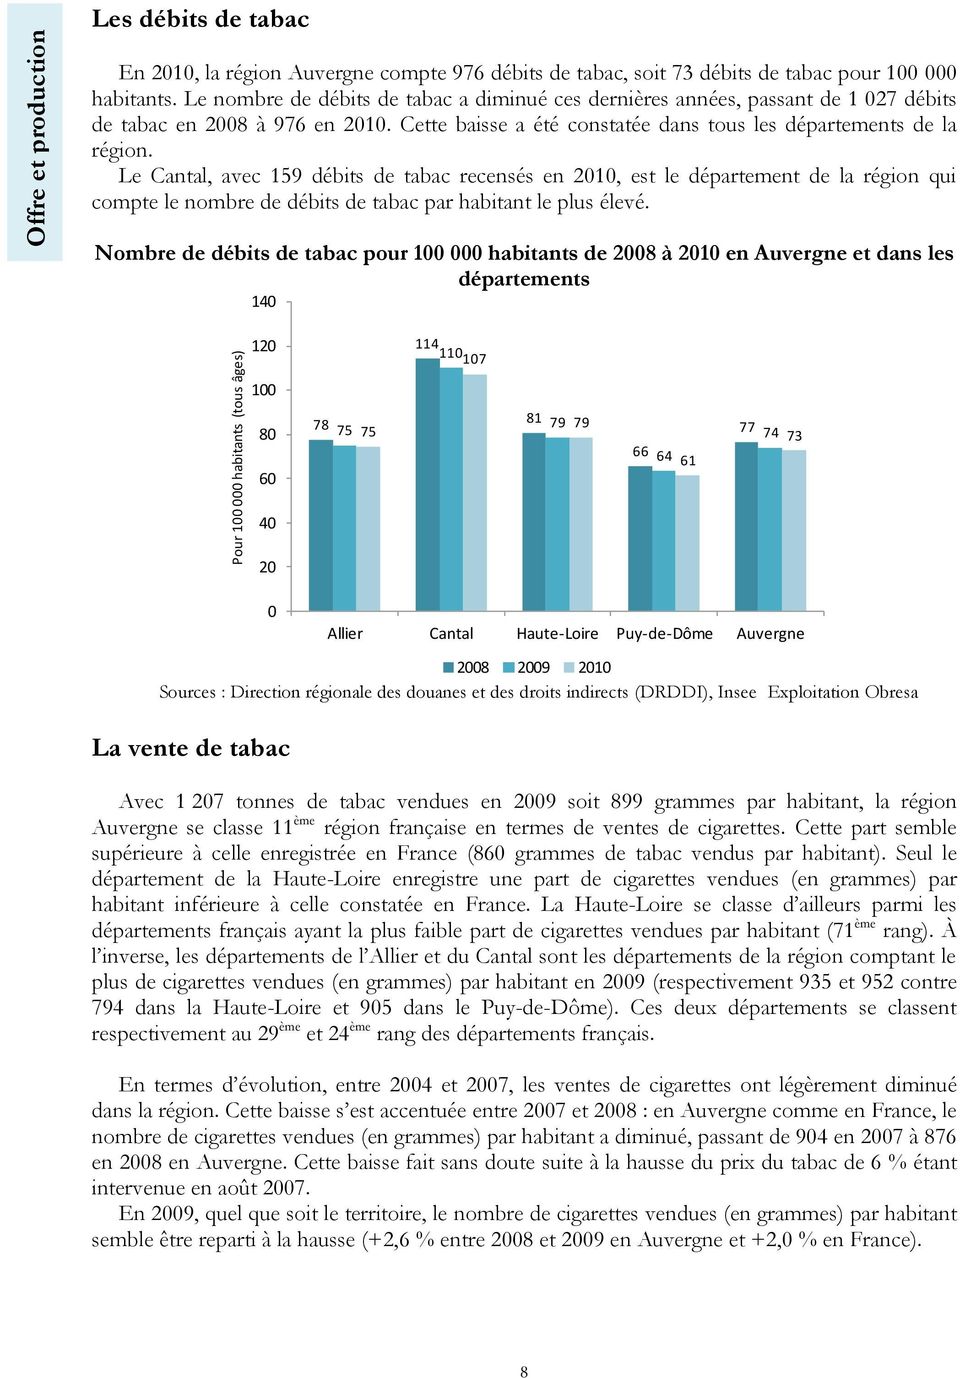 Le Cantal, avec 159 débits de tabac recensés en 2010, est le département de la région qui compte le nombre de débits de tabac par habitant le plus élevé.